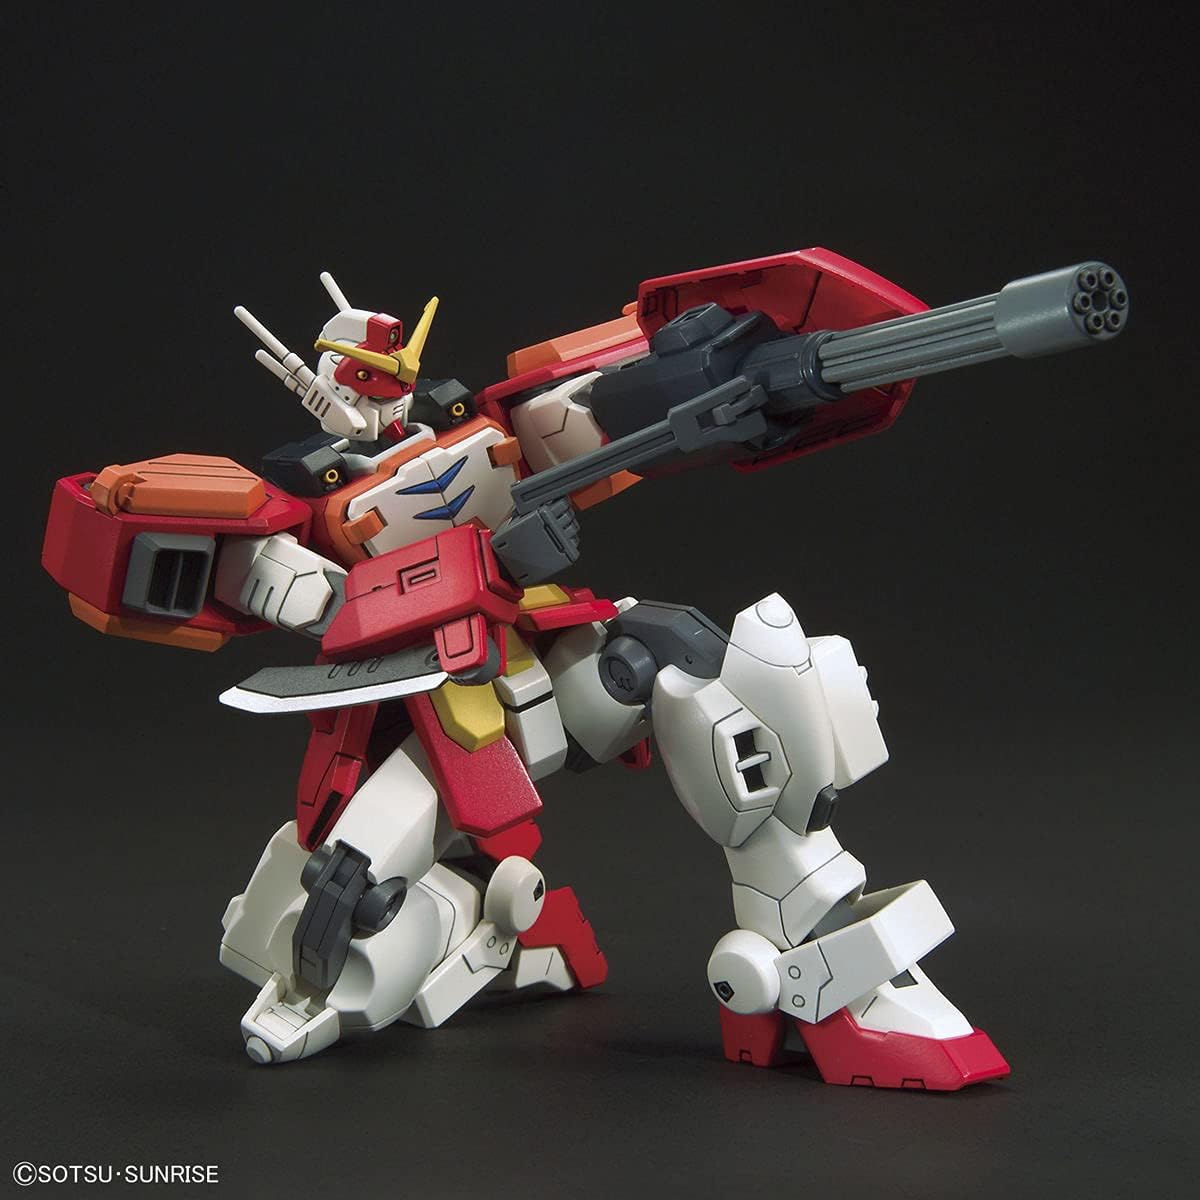 1/144 HGAC "Mobile Suit Gundam Wing" Gundam Heavyarms | animota